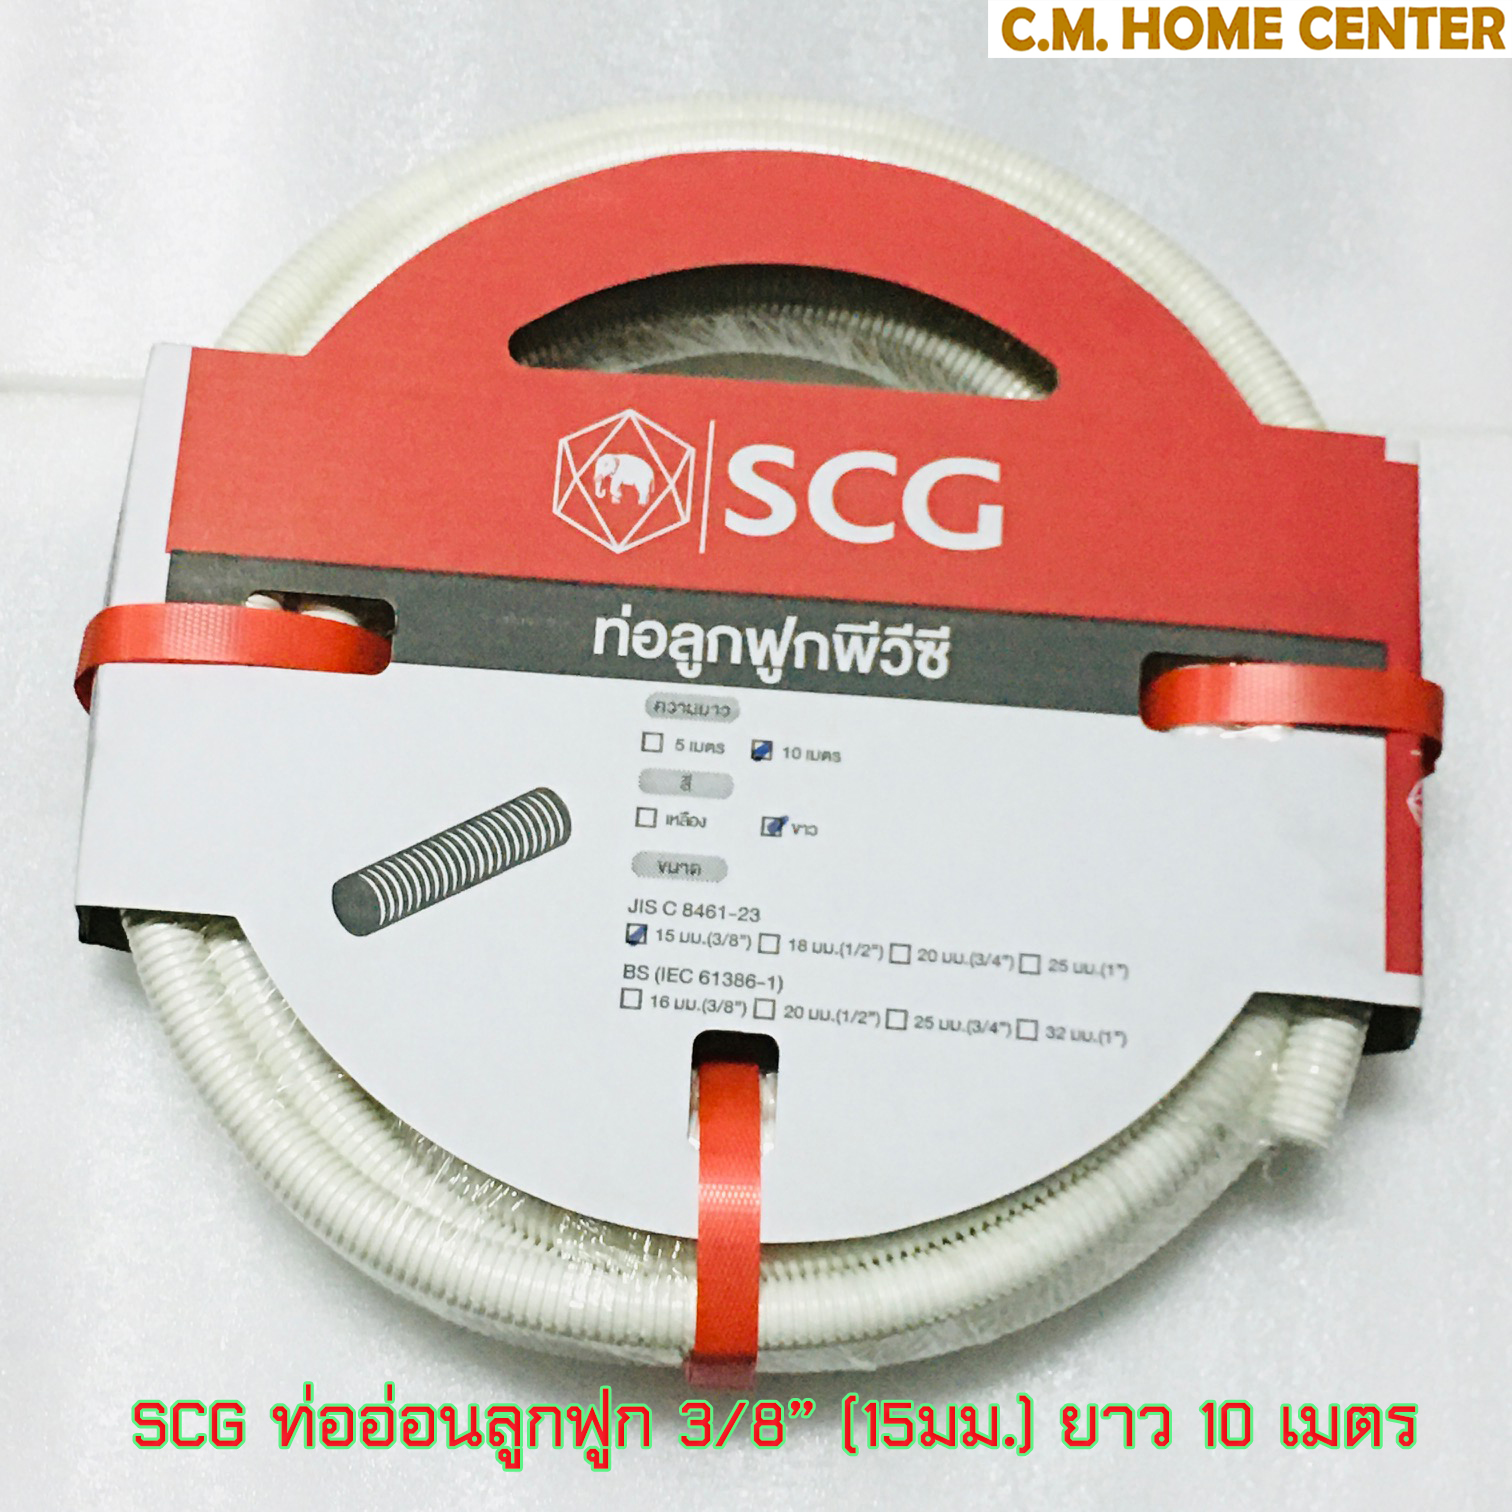 ตราช้าง SCG ท่ออ่อนลายลูกฟูกพีวีซีวีขาว 3/8นิ้ว (15มม.) และ 1/2นิ้ว (18มม.), White CORRUGATED PVC CONDUIT 3/8inch and 1/2 inch